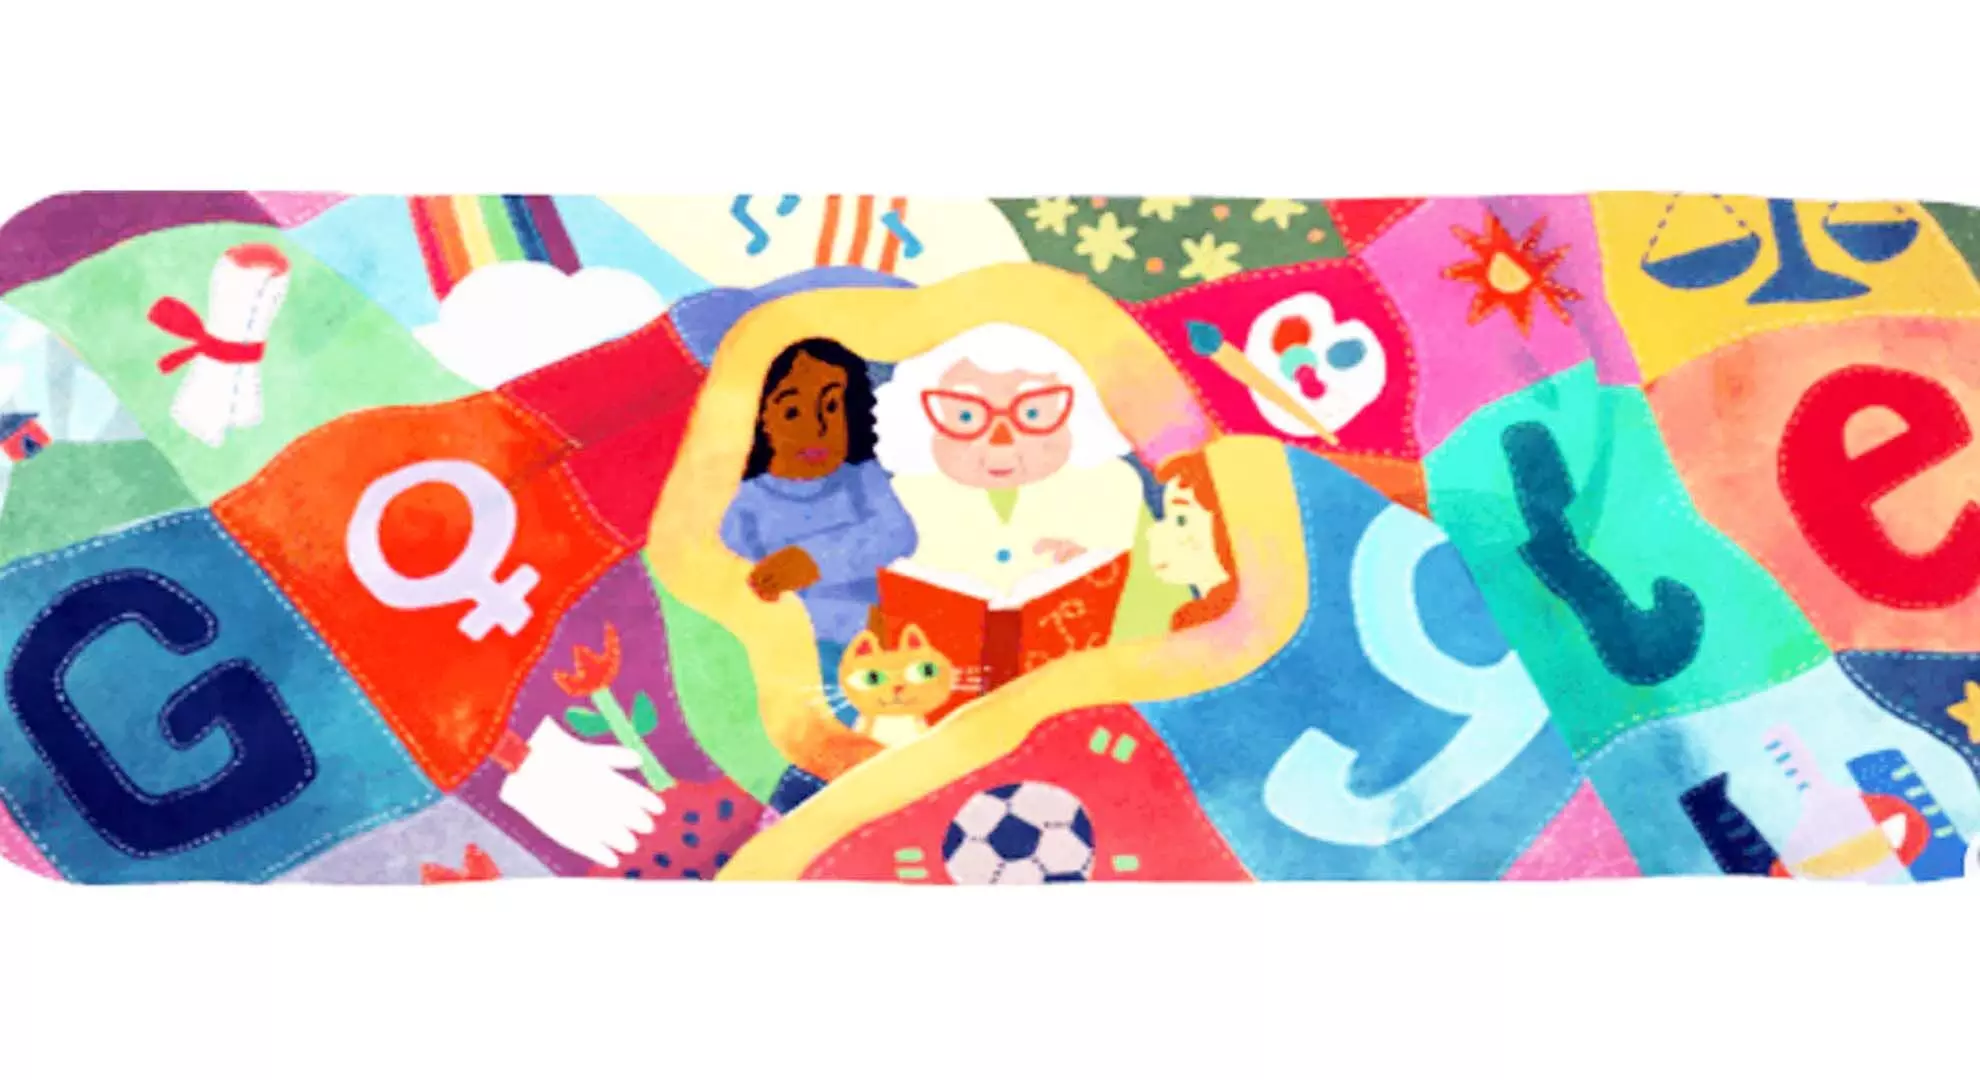 अंतरराष्ट्रीय महिला दिवस पर Google ने बनाया दिलचस्प Doodle, खास अंदाज़ में दी बधाई